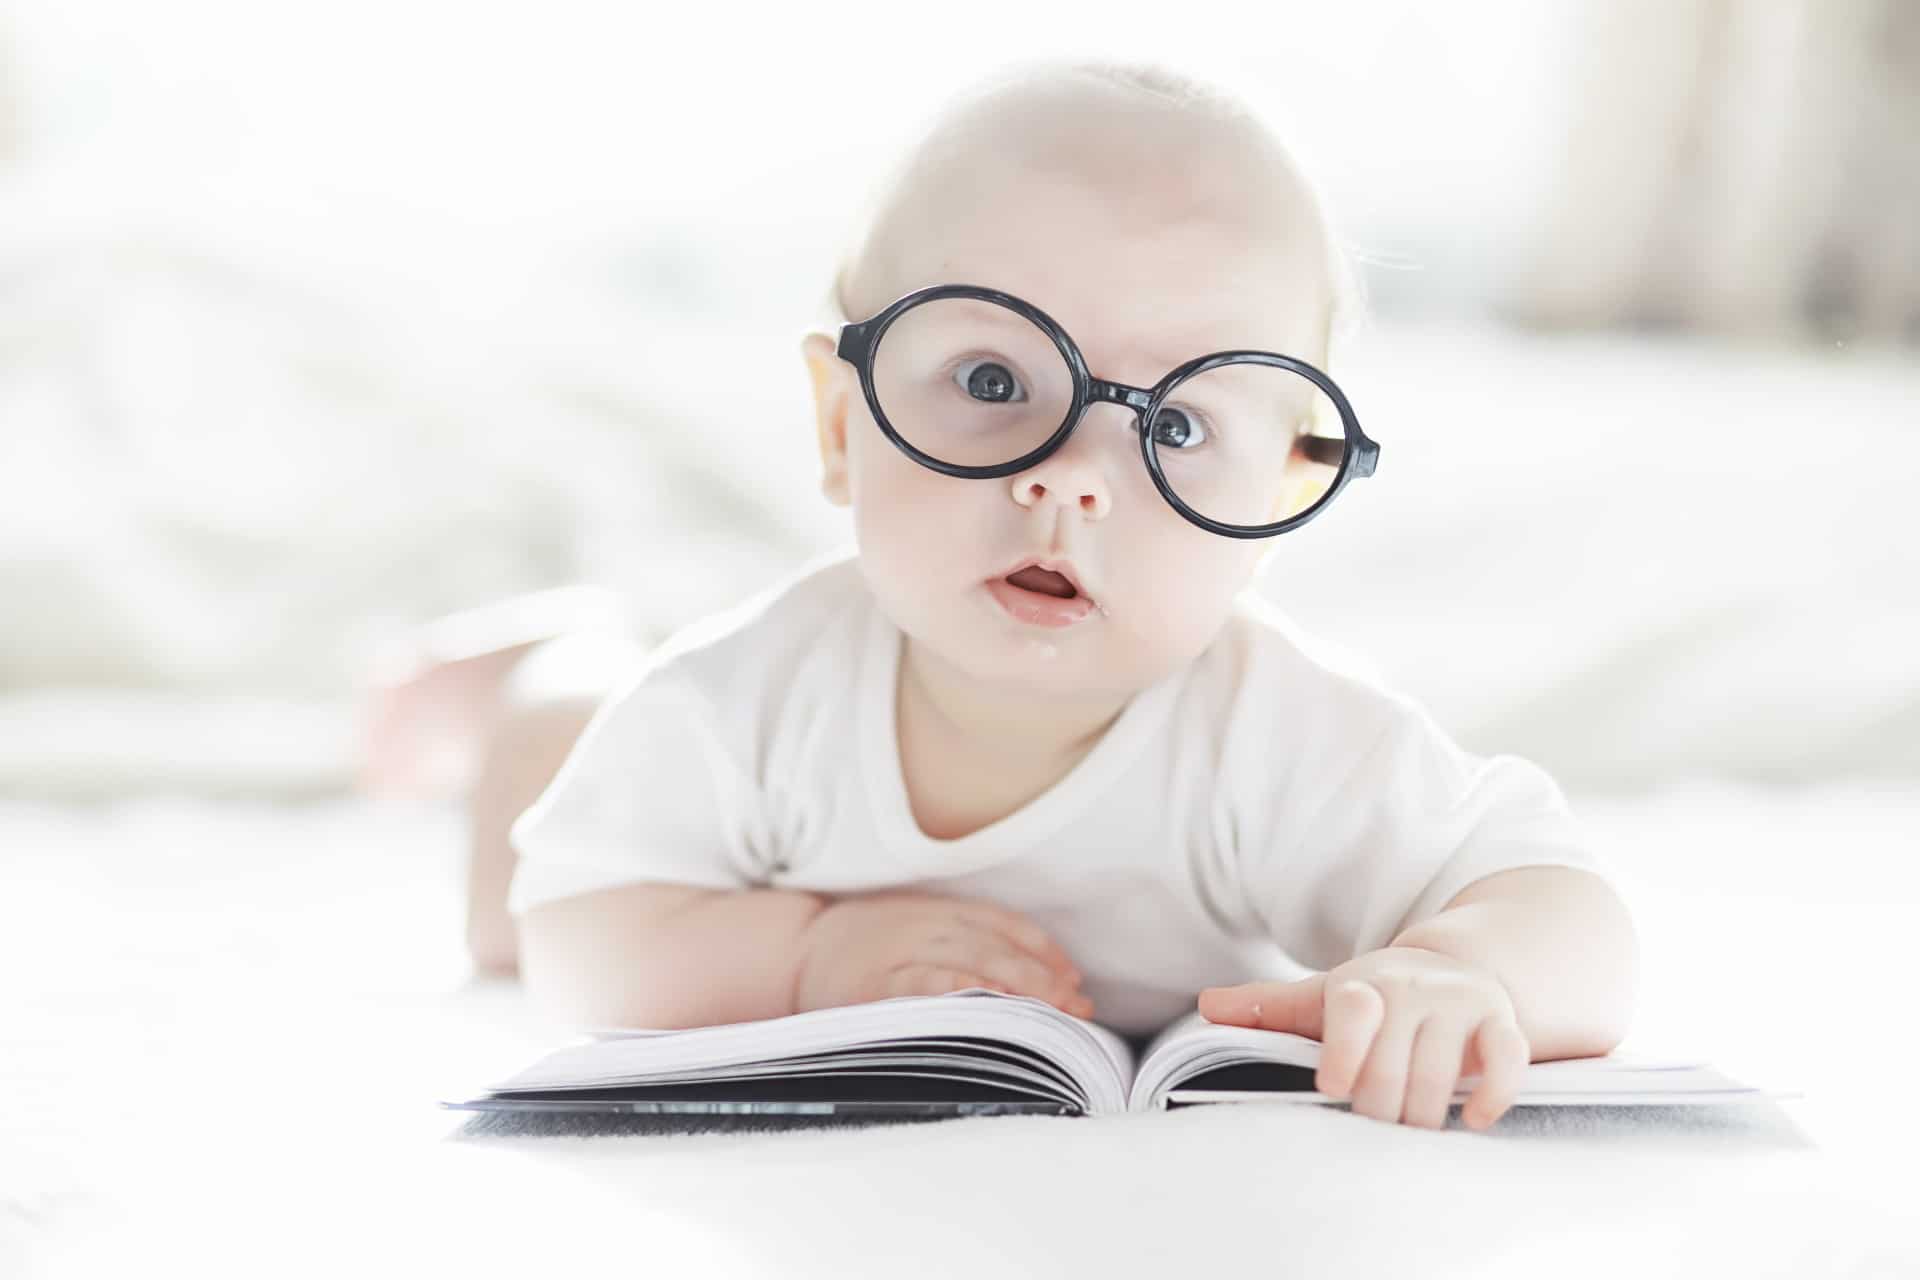 Bébé avec lunette a plat ventre sur un livre